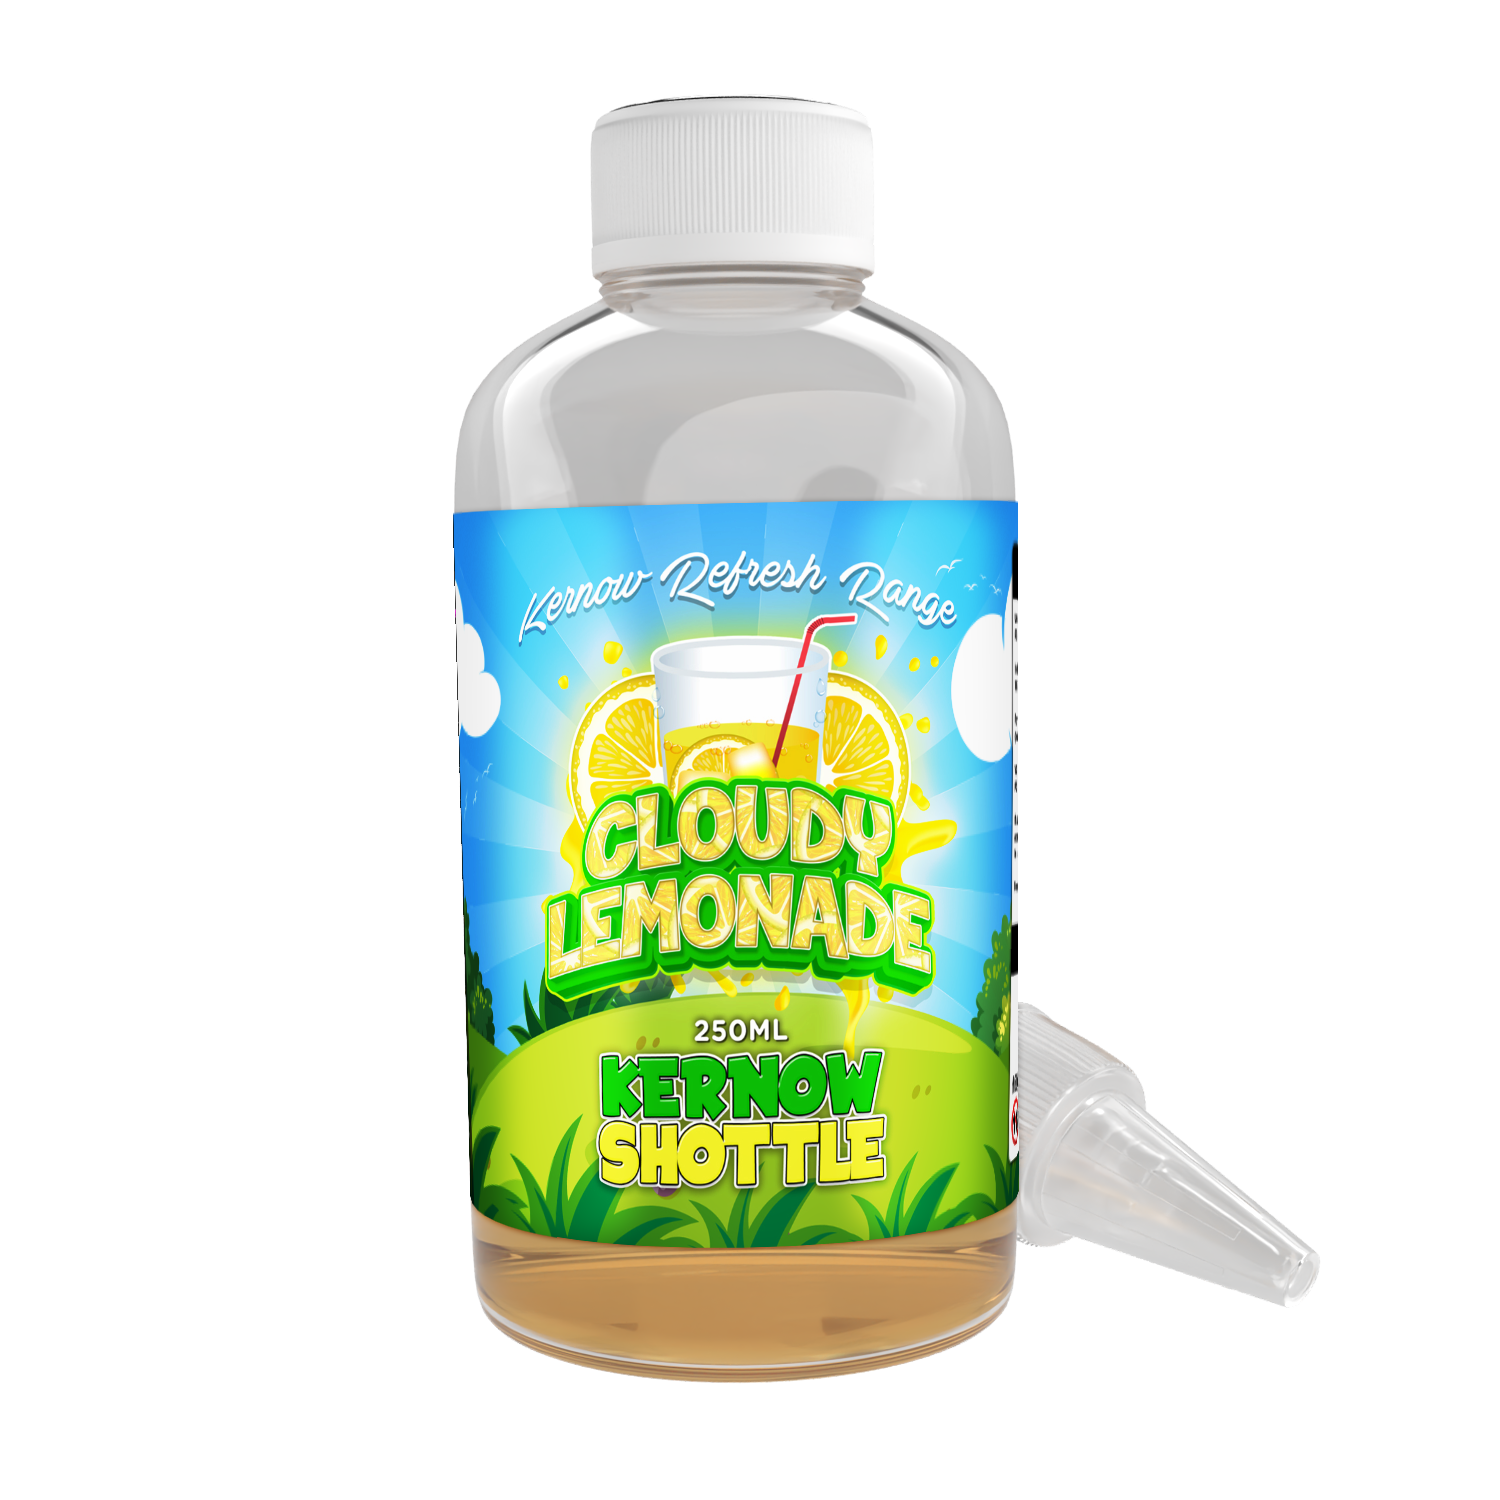 Cloudy Lemonade Shottle Flavour Shot by Kernow - 250ml